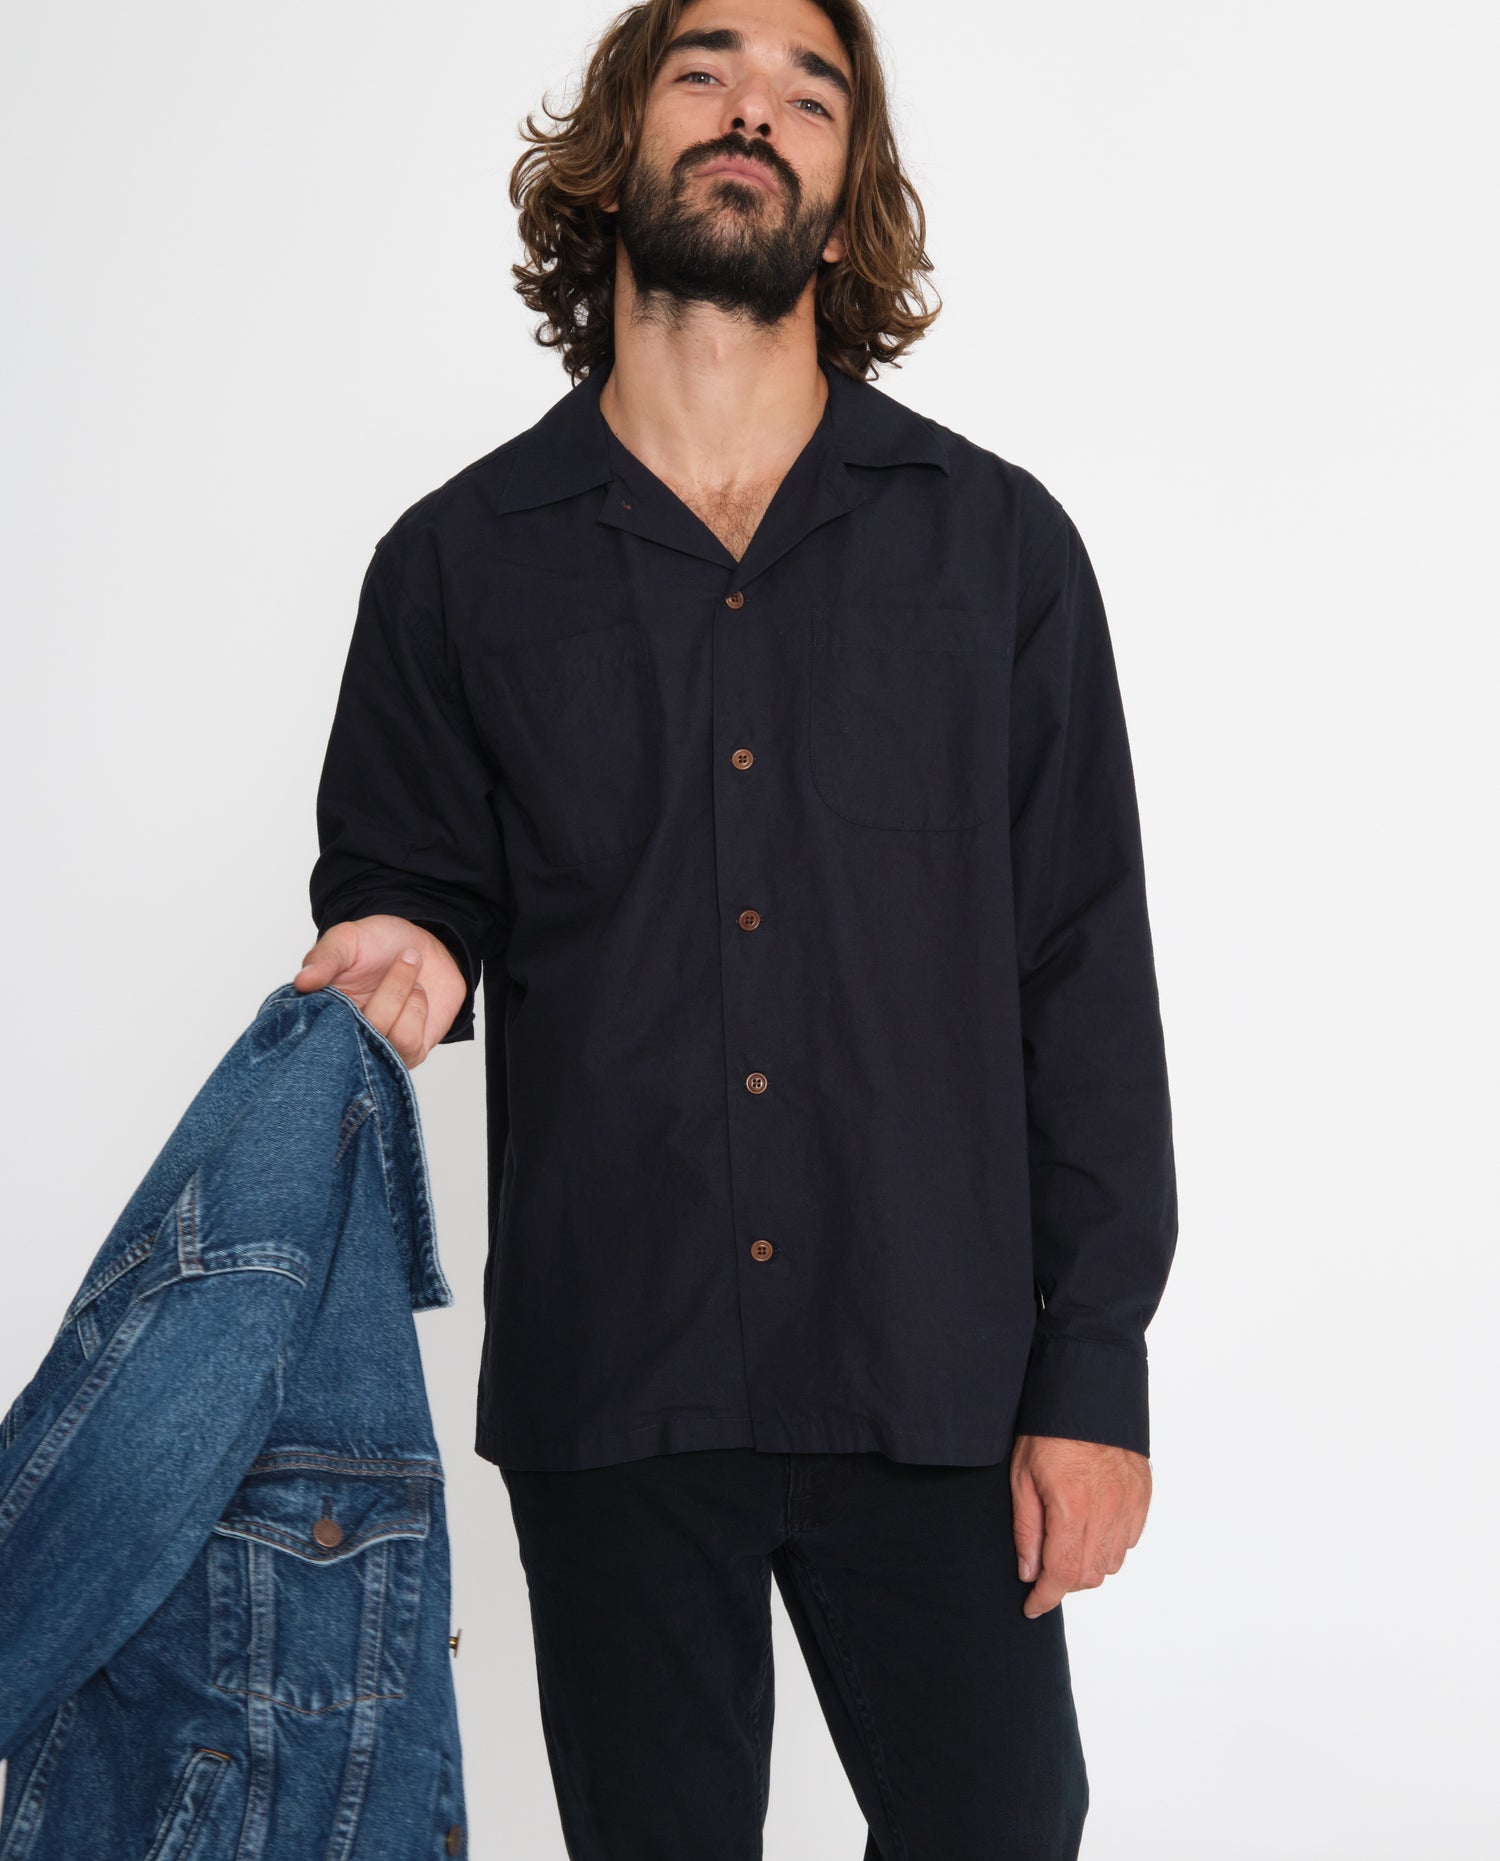 marché commun nudie jeans vincent vacay shirt bleu marine éco-responsable coton biologique lyocell